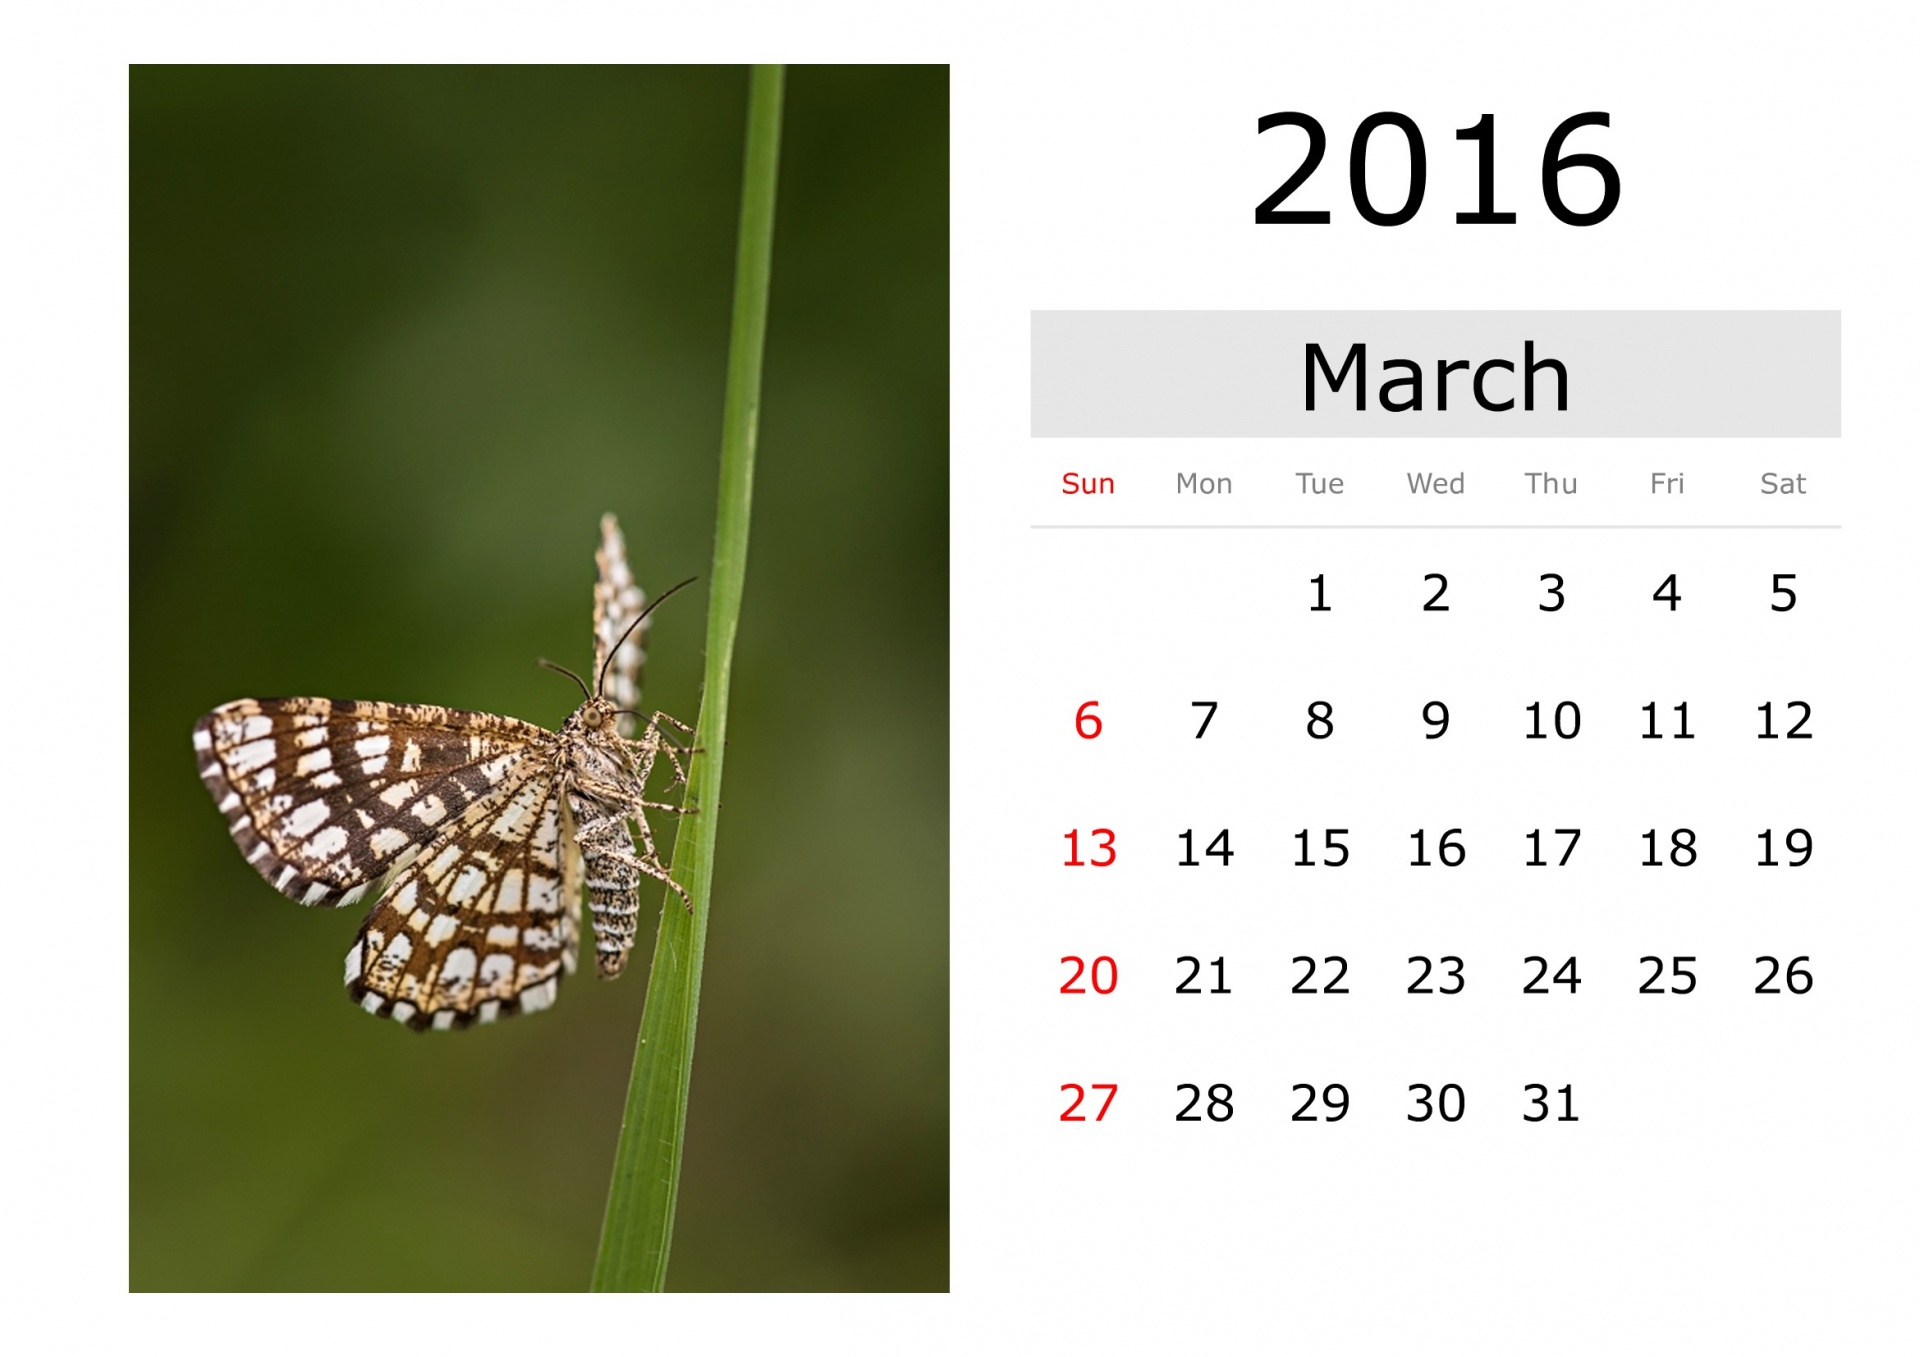 Calendar - March 2016 (English)